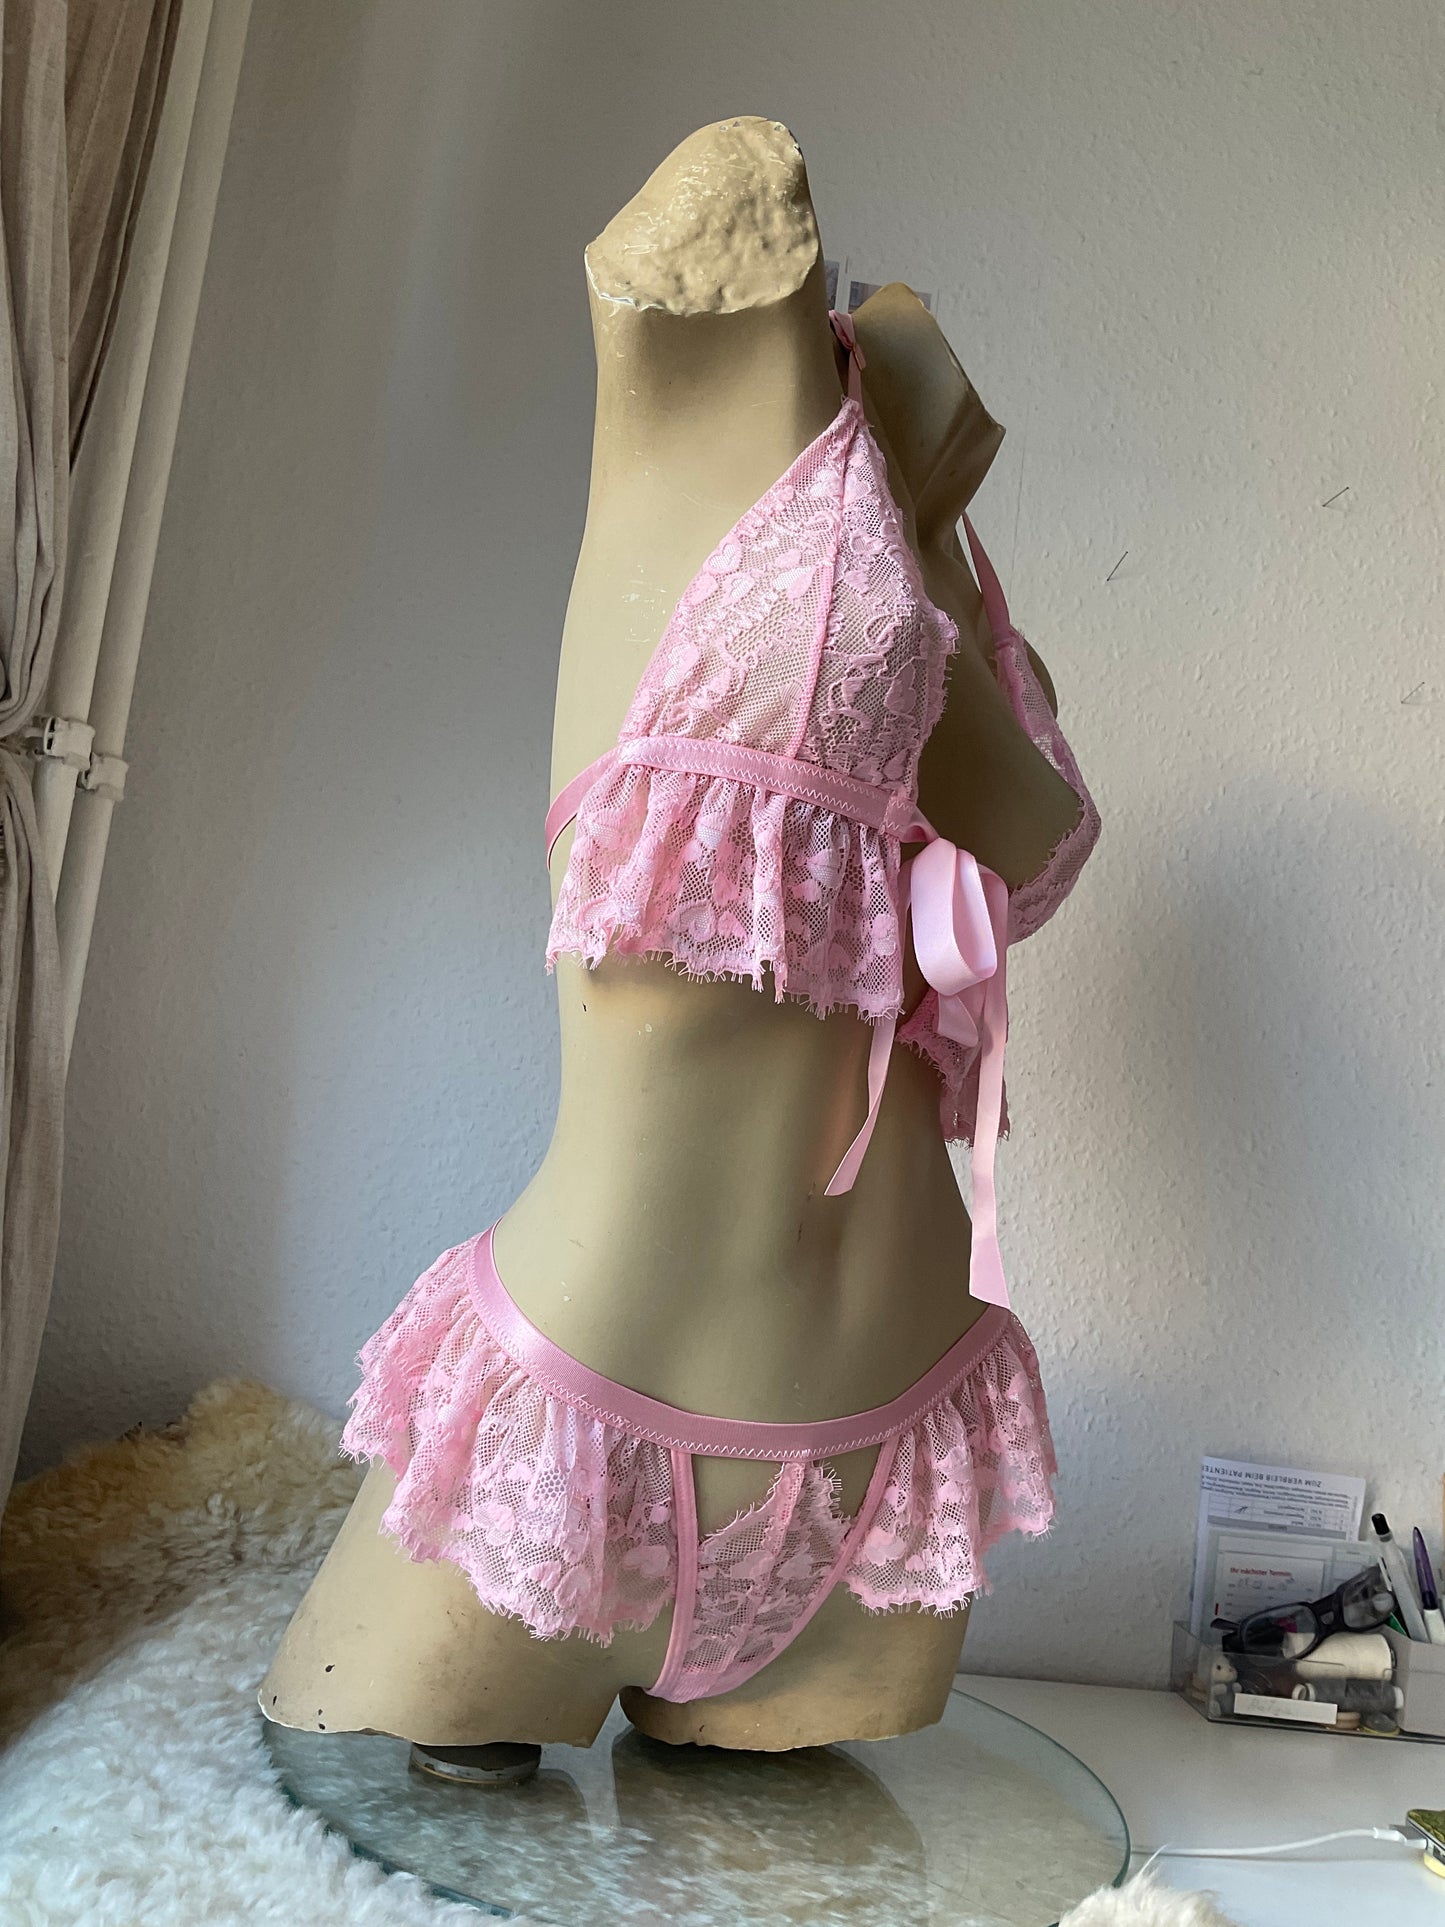 Pink lingerie lace set